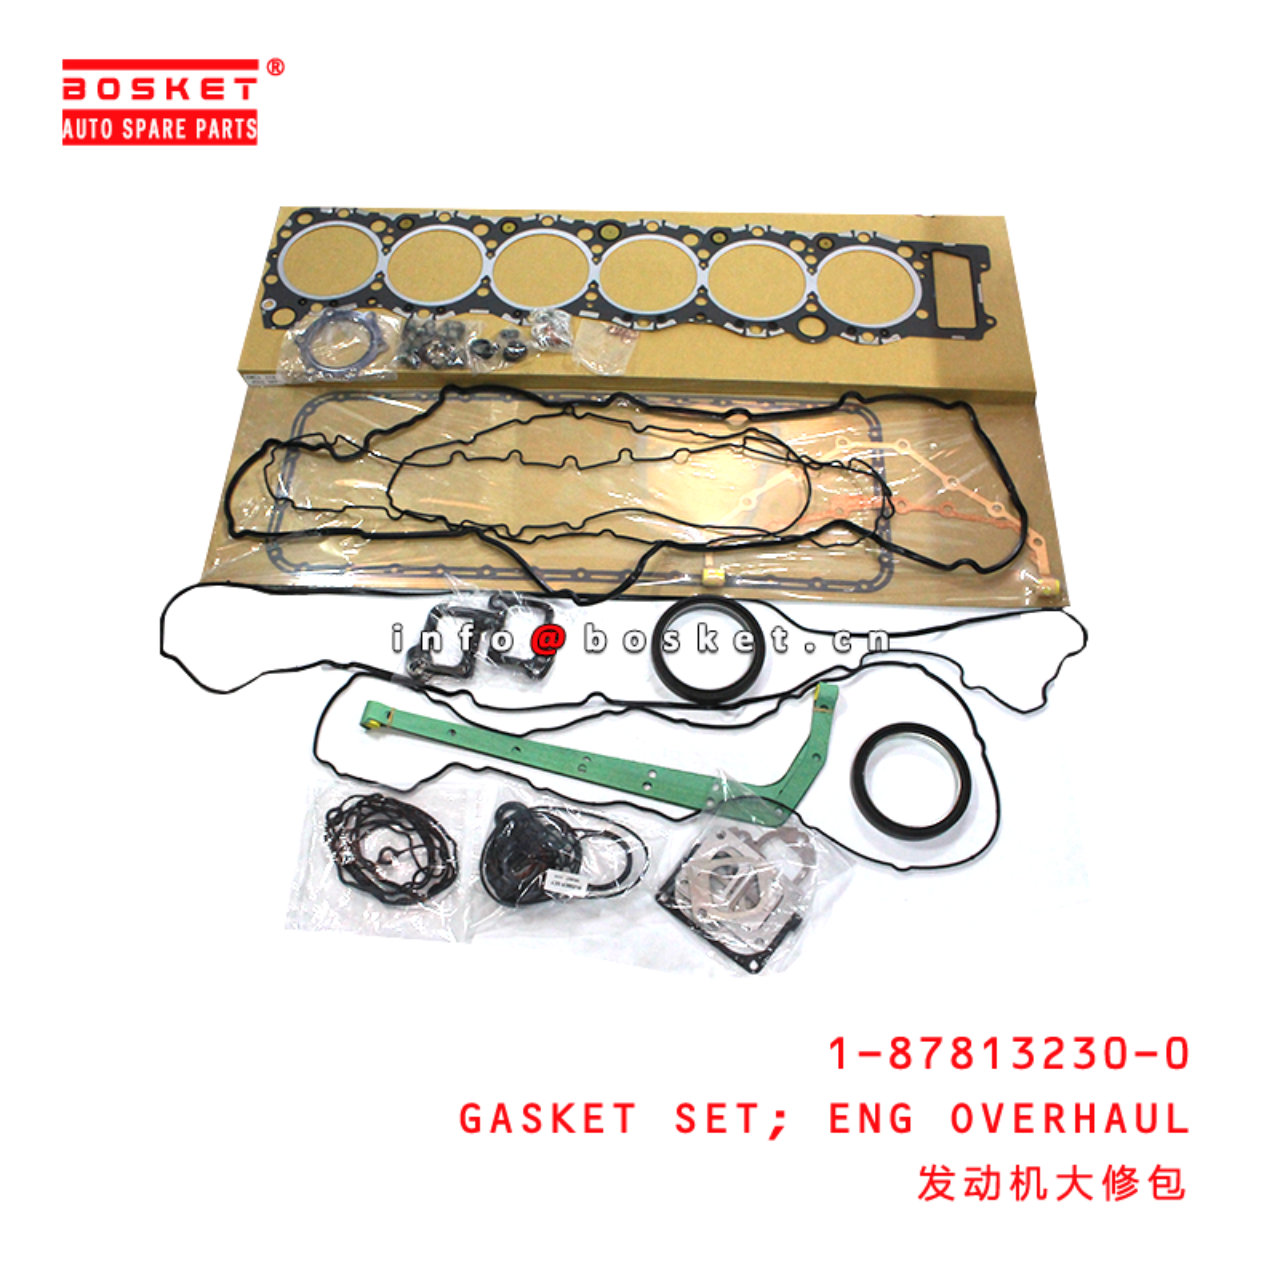 1-87813230-0 Engine Overhaul Gasket Set Suitable for ISUZU CYZ06 6WF1 1878132300